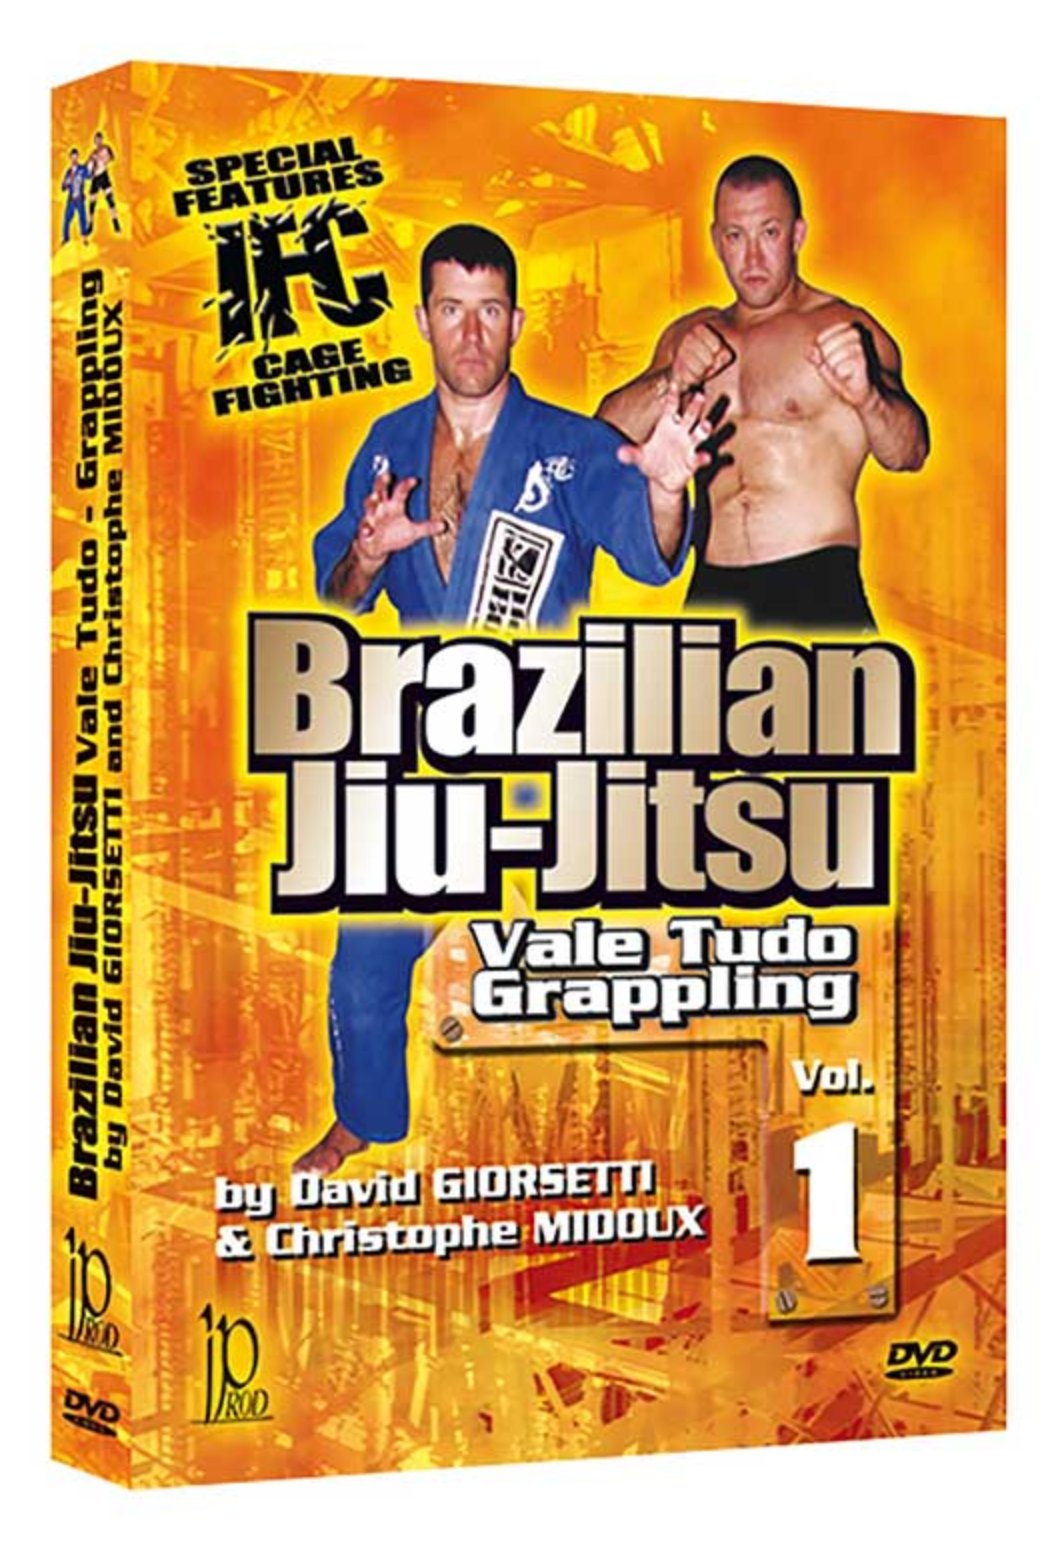 ブラジリアン柔術ヴァーリトゥード グラップリング DVD 1 デビッド ジョセッティ & クリストフ ミドゥー